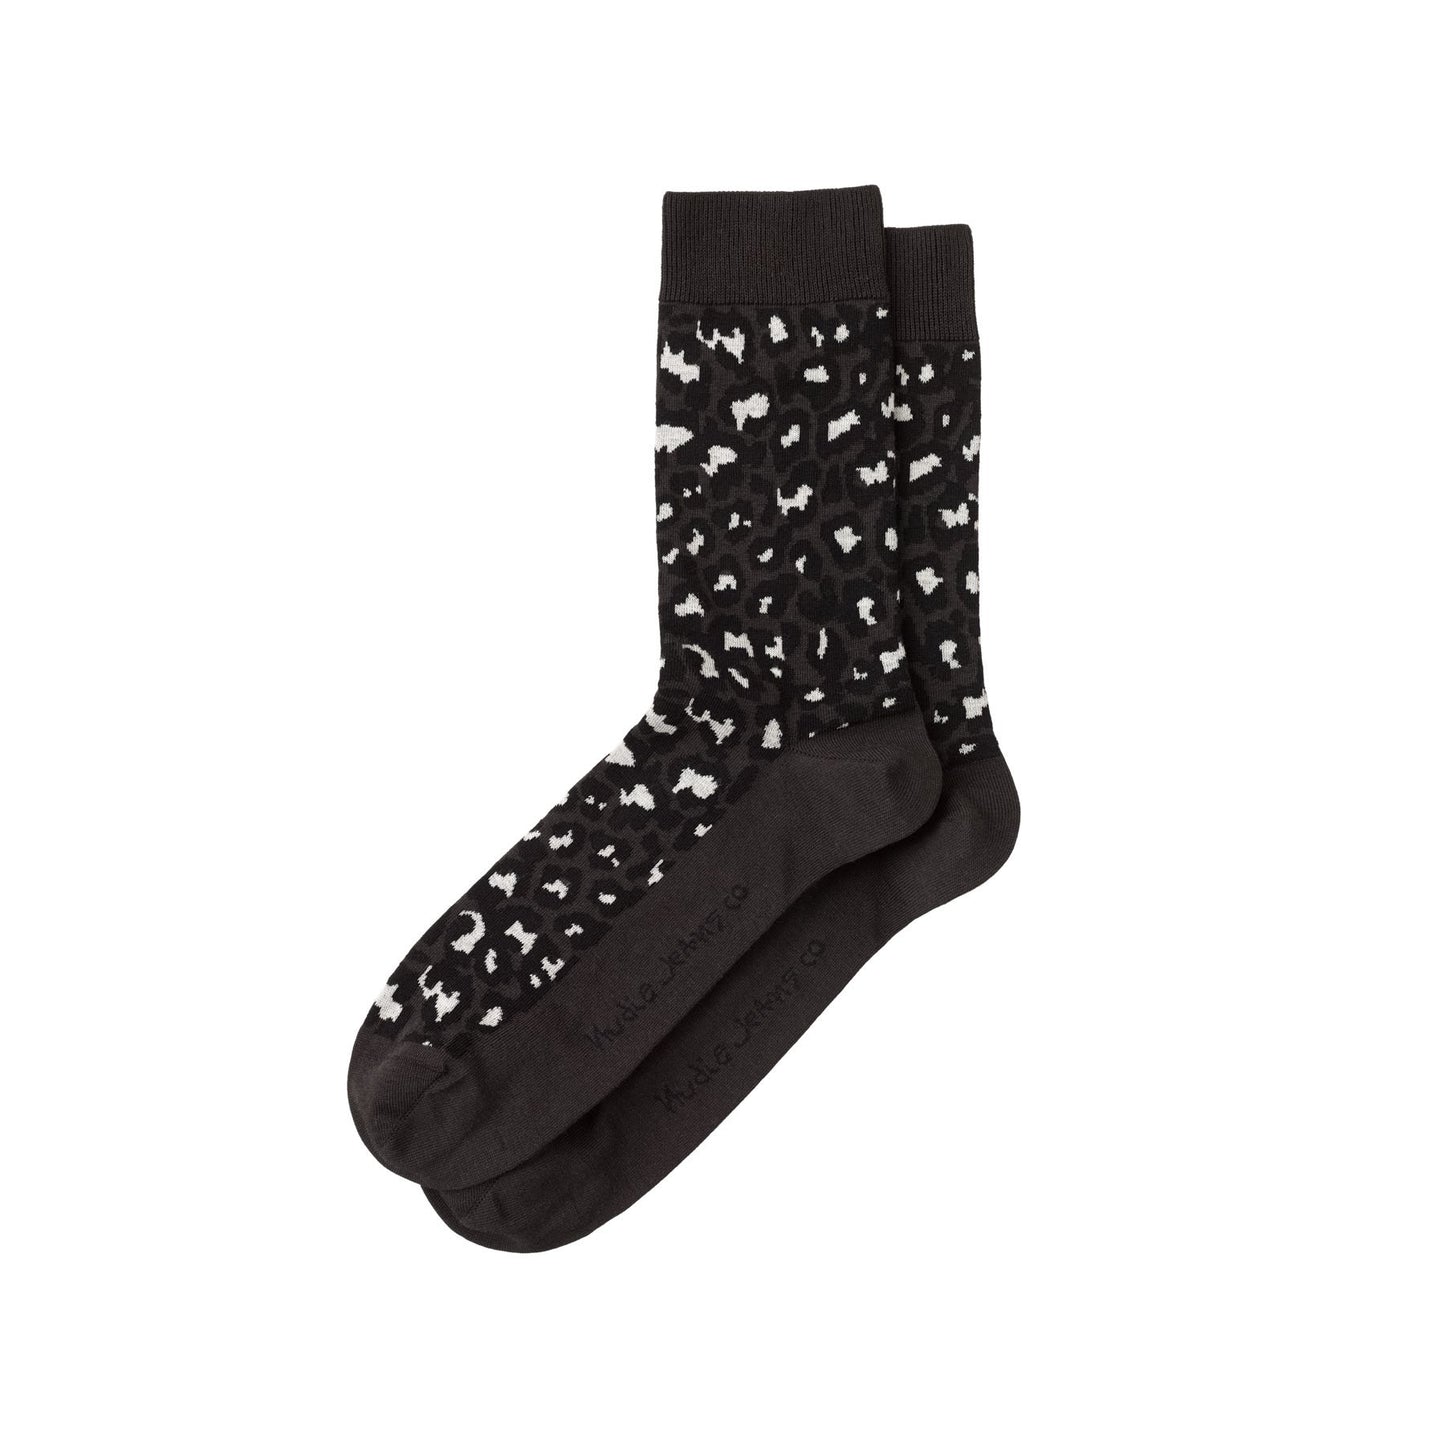 Nudie Jeans Co. Olsson Leopard Socks